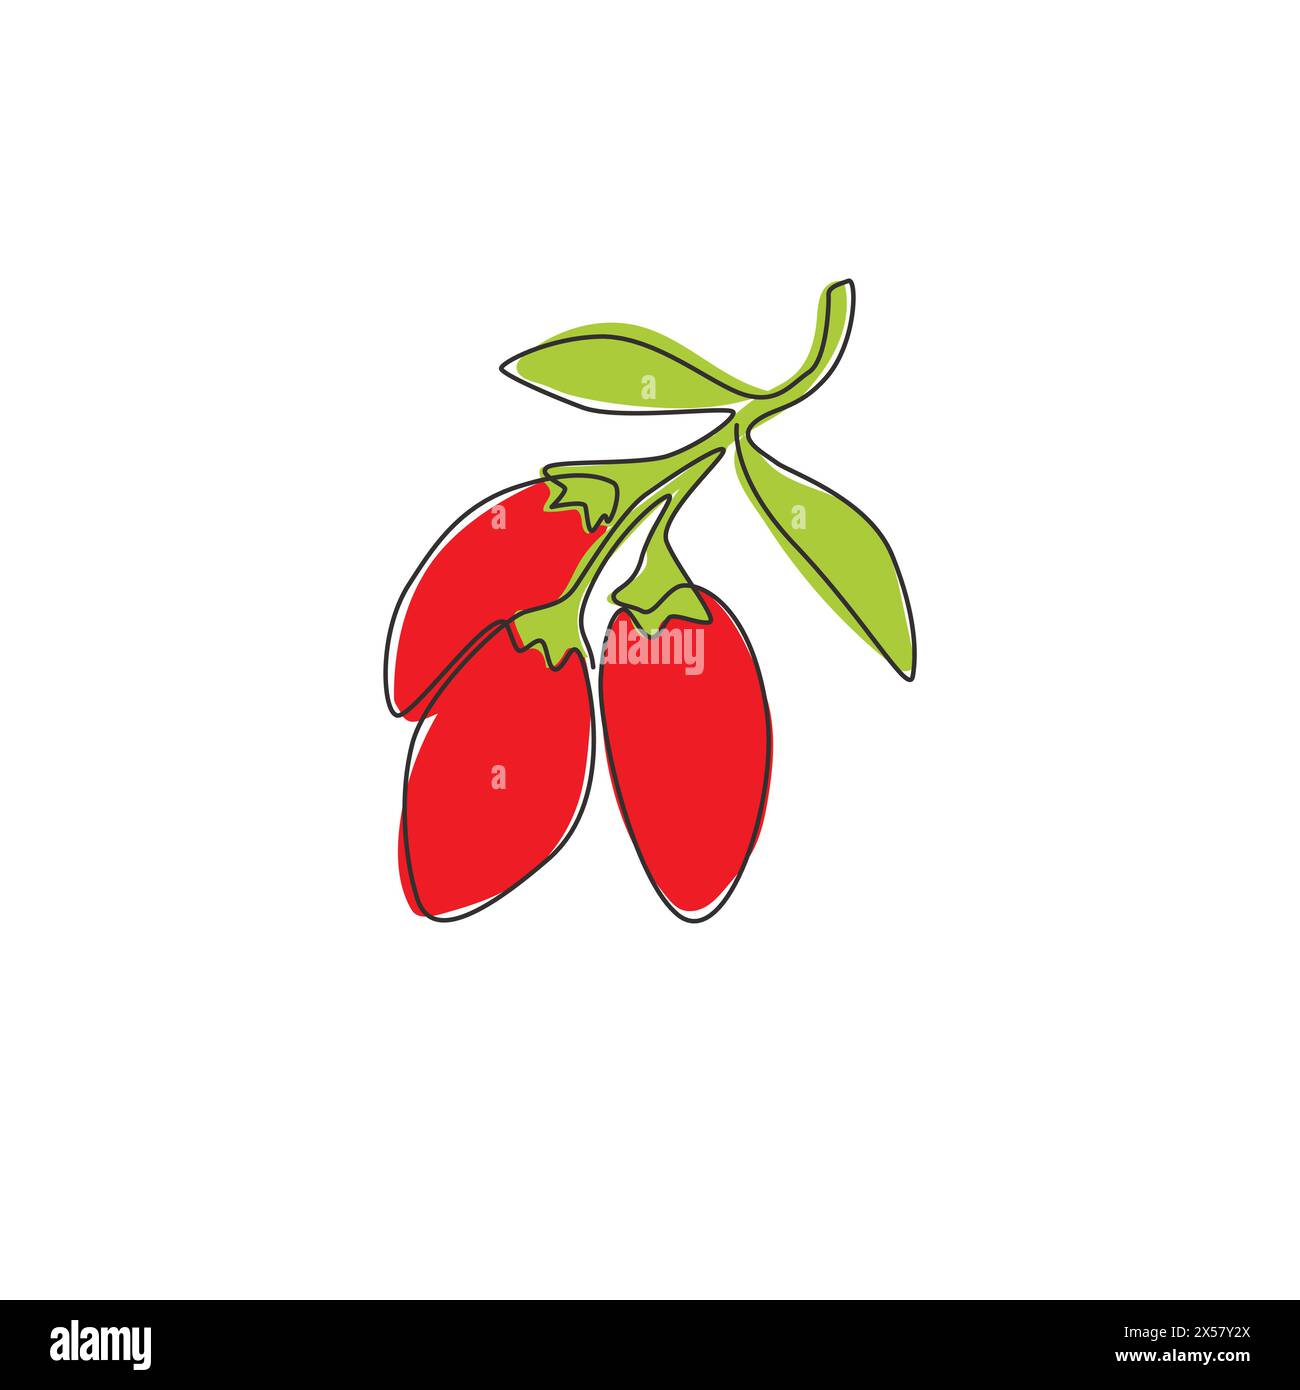 Eine durchgehende Linie Zeichnung Stapel ganze gesunde Bio Goji Beeren für Obstgarten Logo Identität. Frisches Obst-Konzept für die Ikone des Obstgartens. Moderne s Stock Vektor